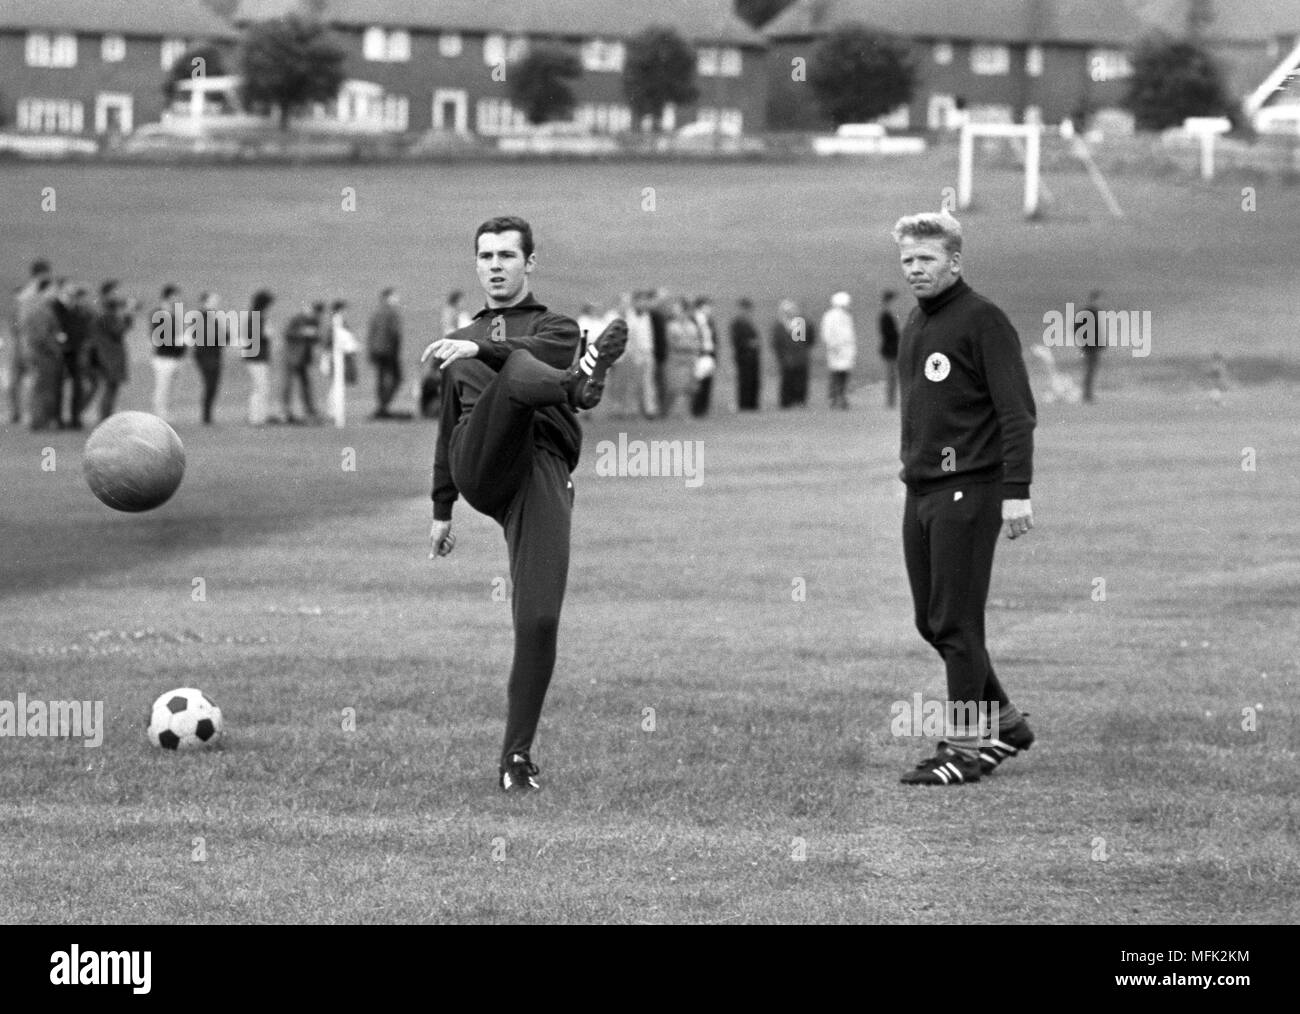 Fußball WM 1966 - Franz Beckenbauer (L) und Helmut Haller sind während eines Trainings sesseion, am 15. Juli 1966. | Verwendung weltweit Stockfoto